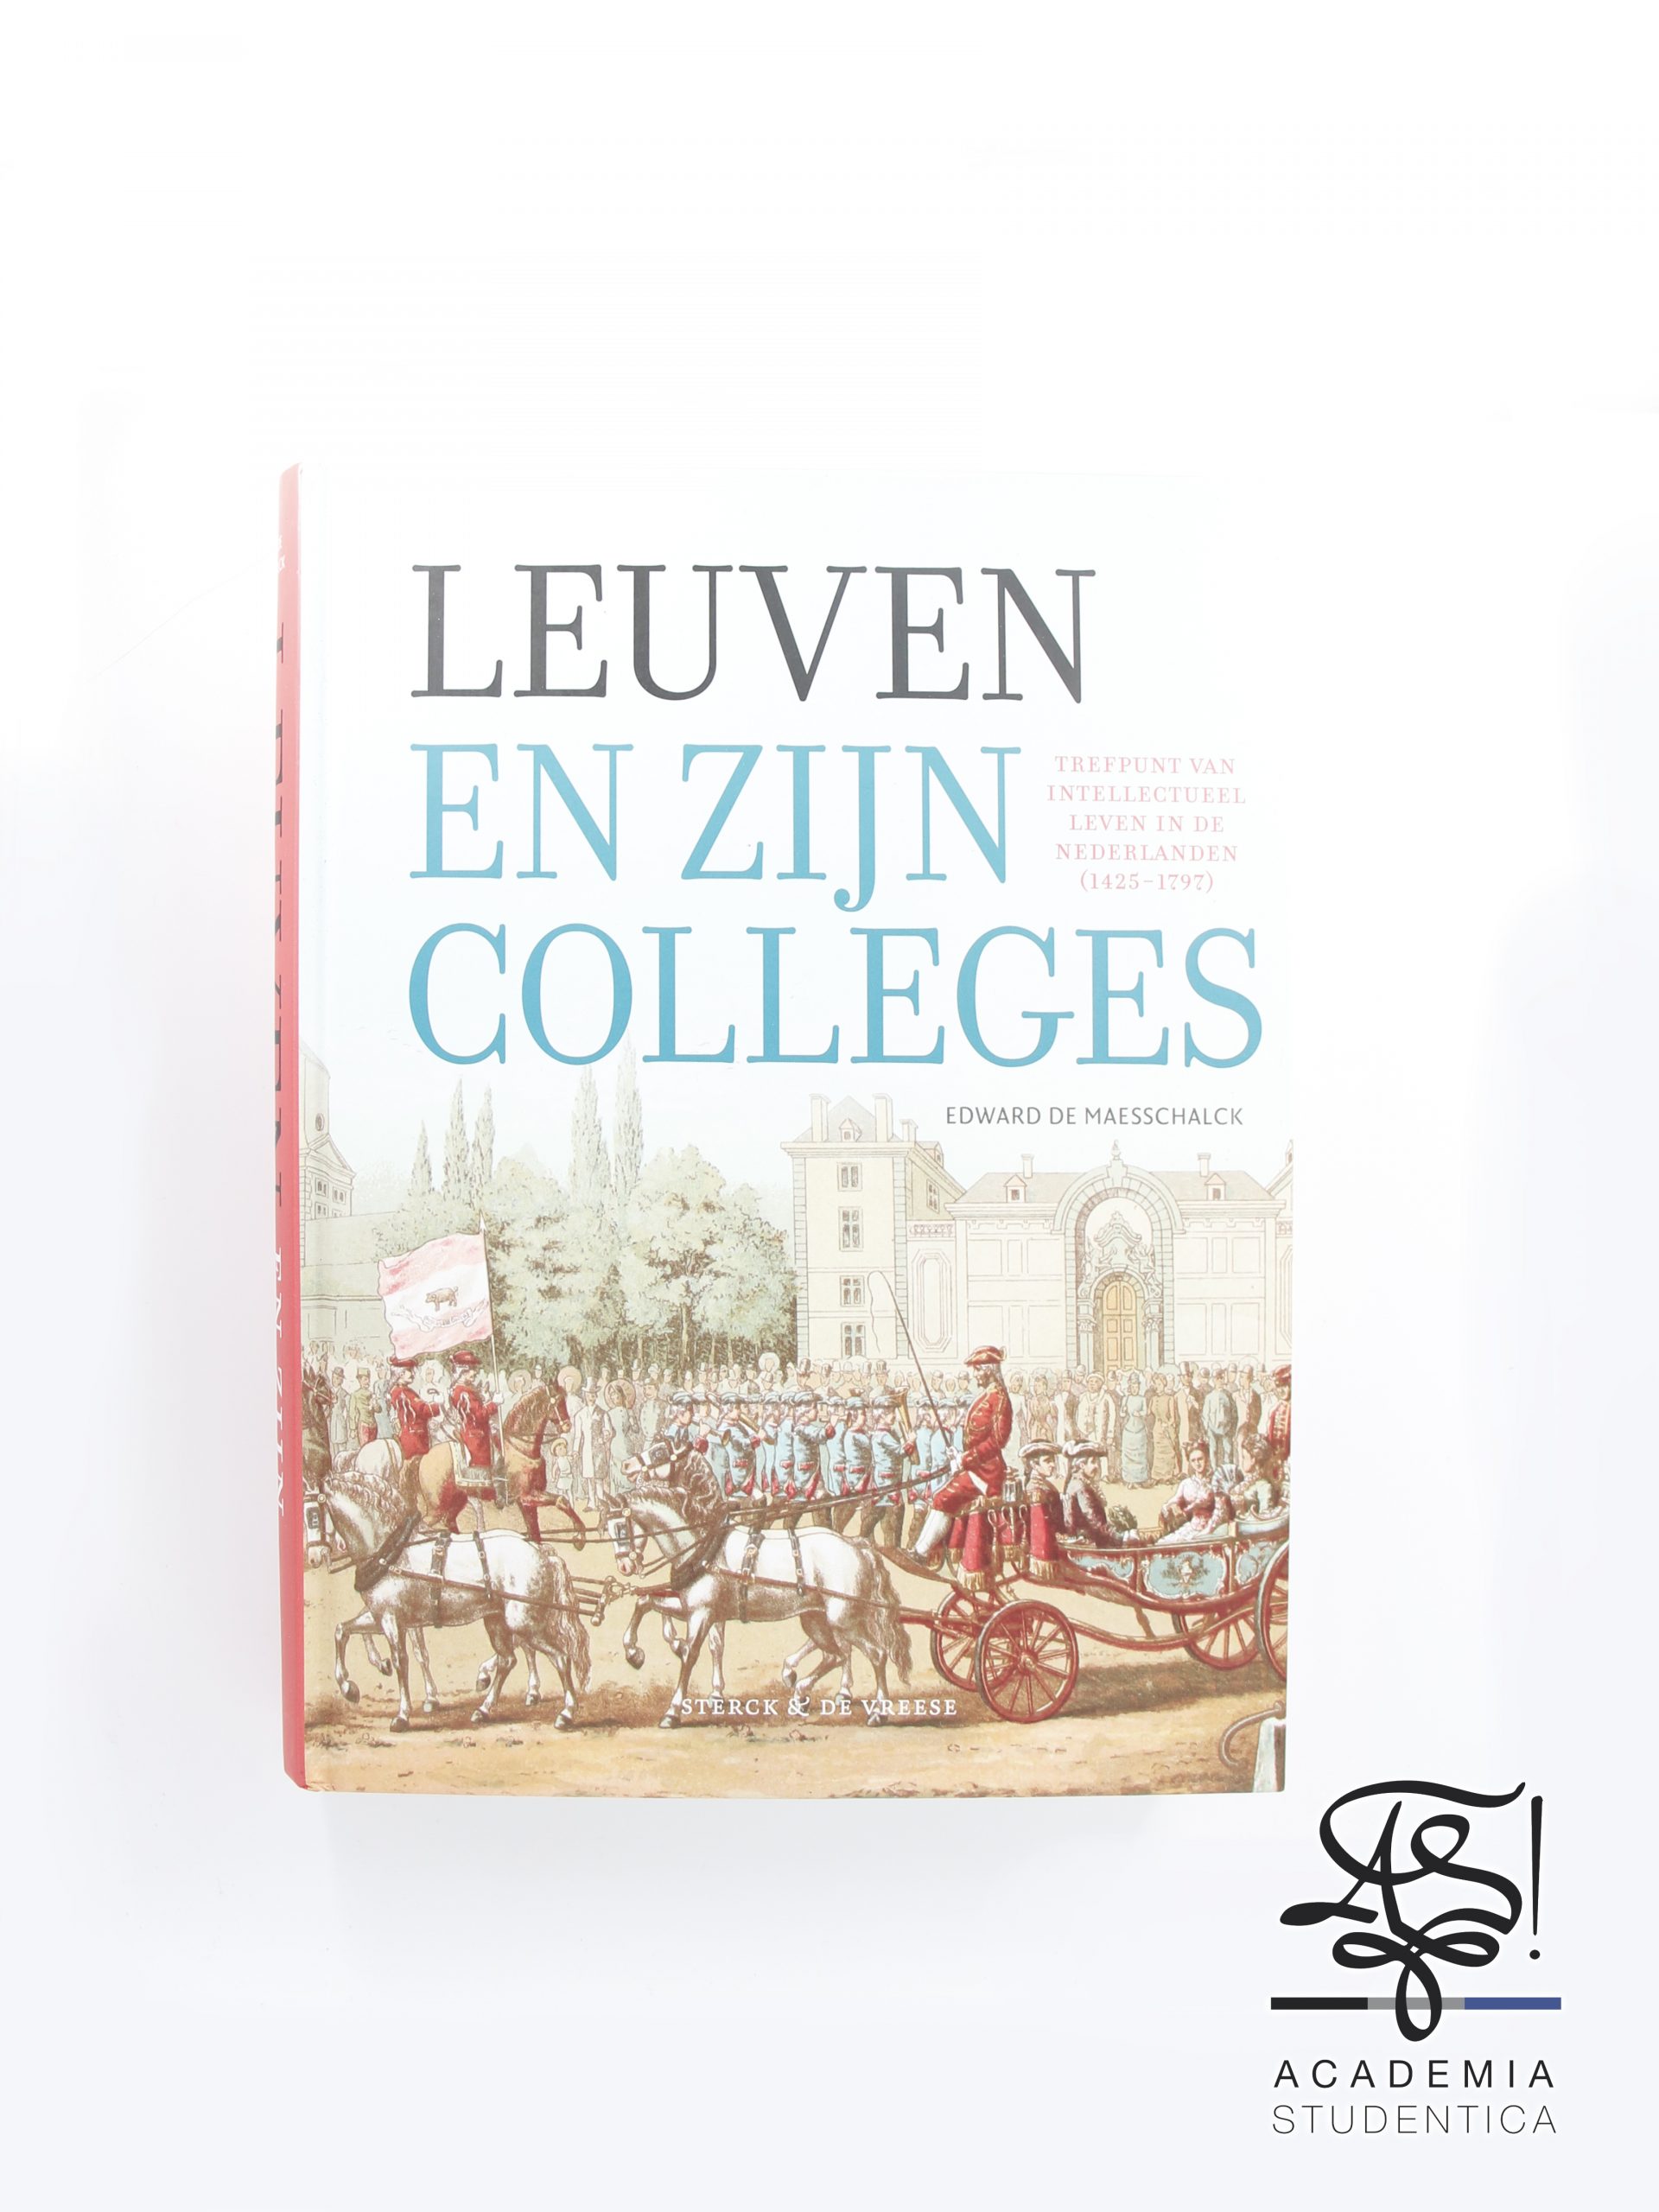 Read more about the article Maesschalck, Edwaerd de, Leuven en zijn colleges. Trefpunt van intellectueel leven in de Nederlanden (1425-1797), Sterck & De Vreese,  the Netherlands, Gorredijk, 2021.